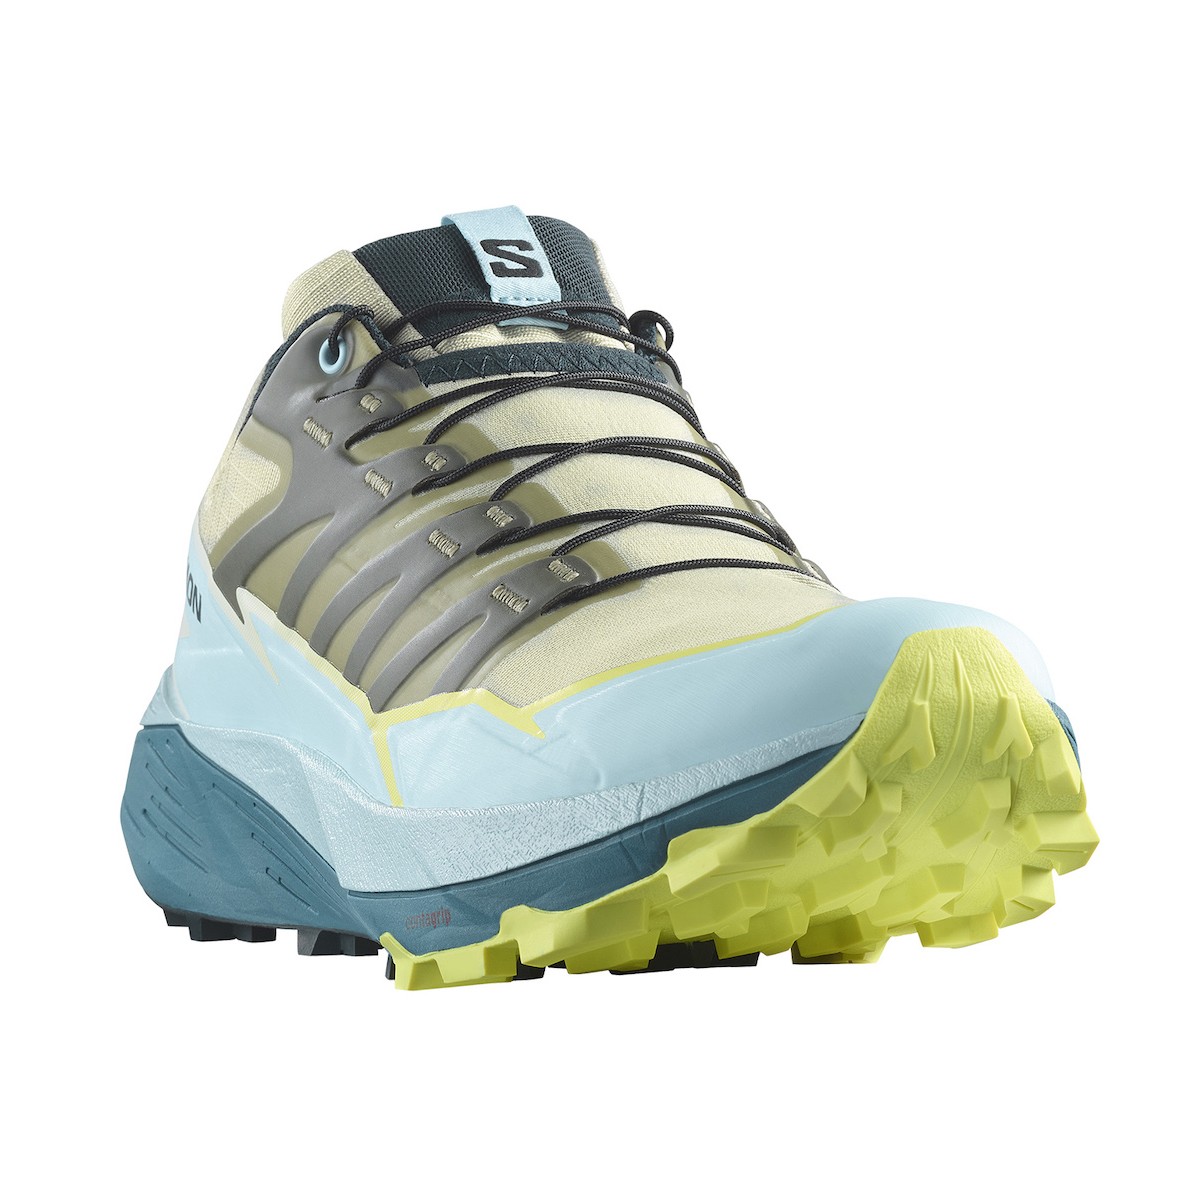 SALOMON THUNDERCROSS W trail running shoes - green/light blue/grey